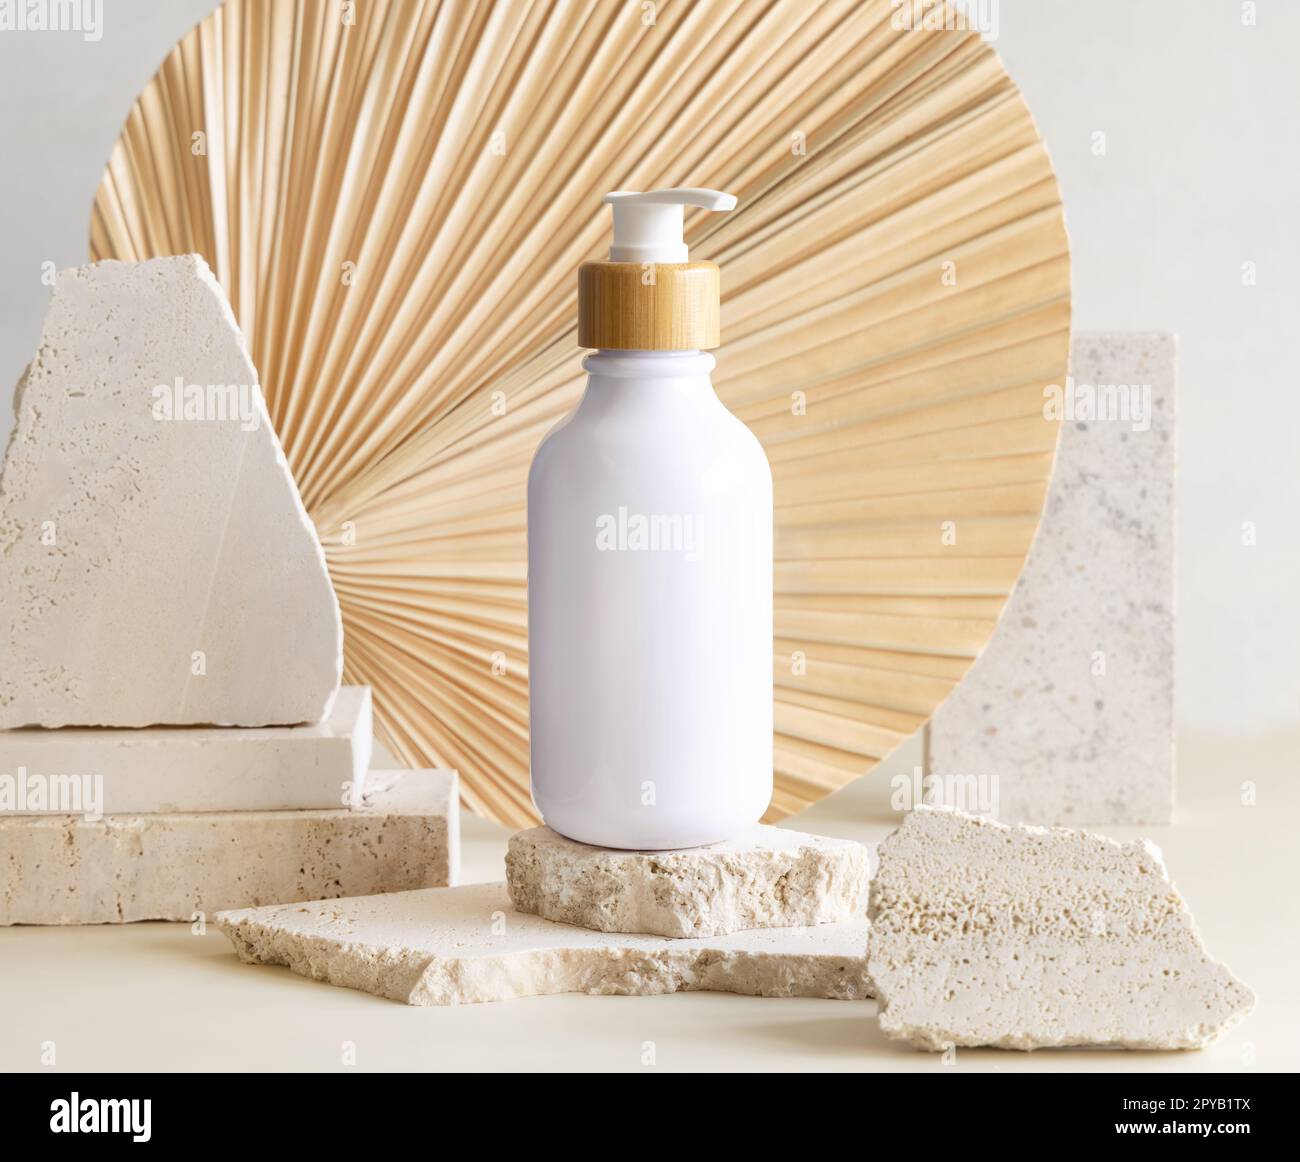 Blanc une bouteille de pompe sur des pierres de biège contre la feuille de palmier séchée. Maquette cosmétique Banque D'Images